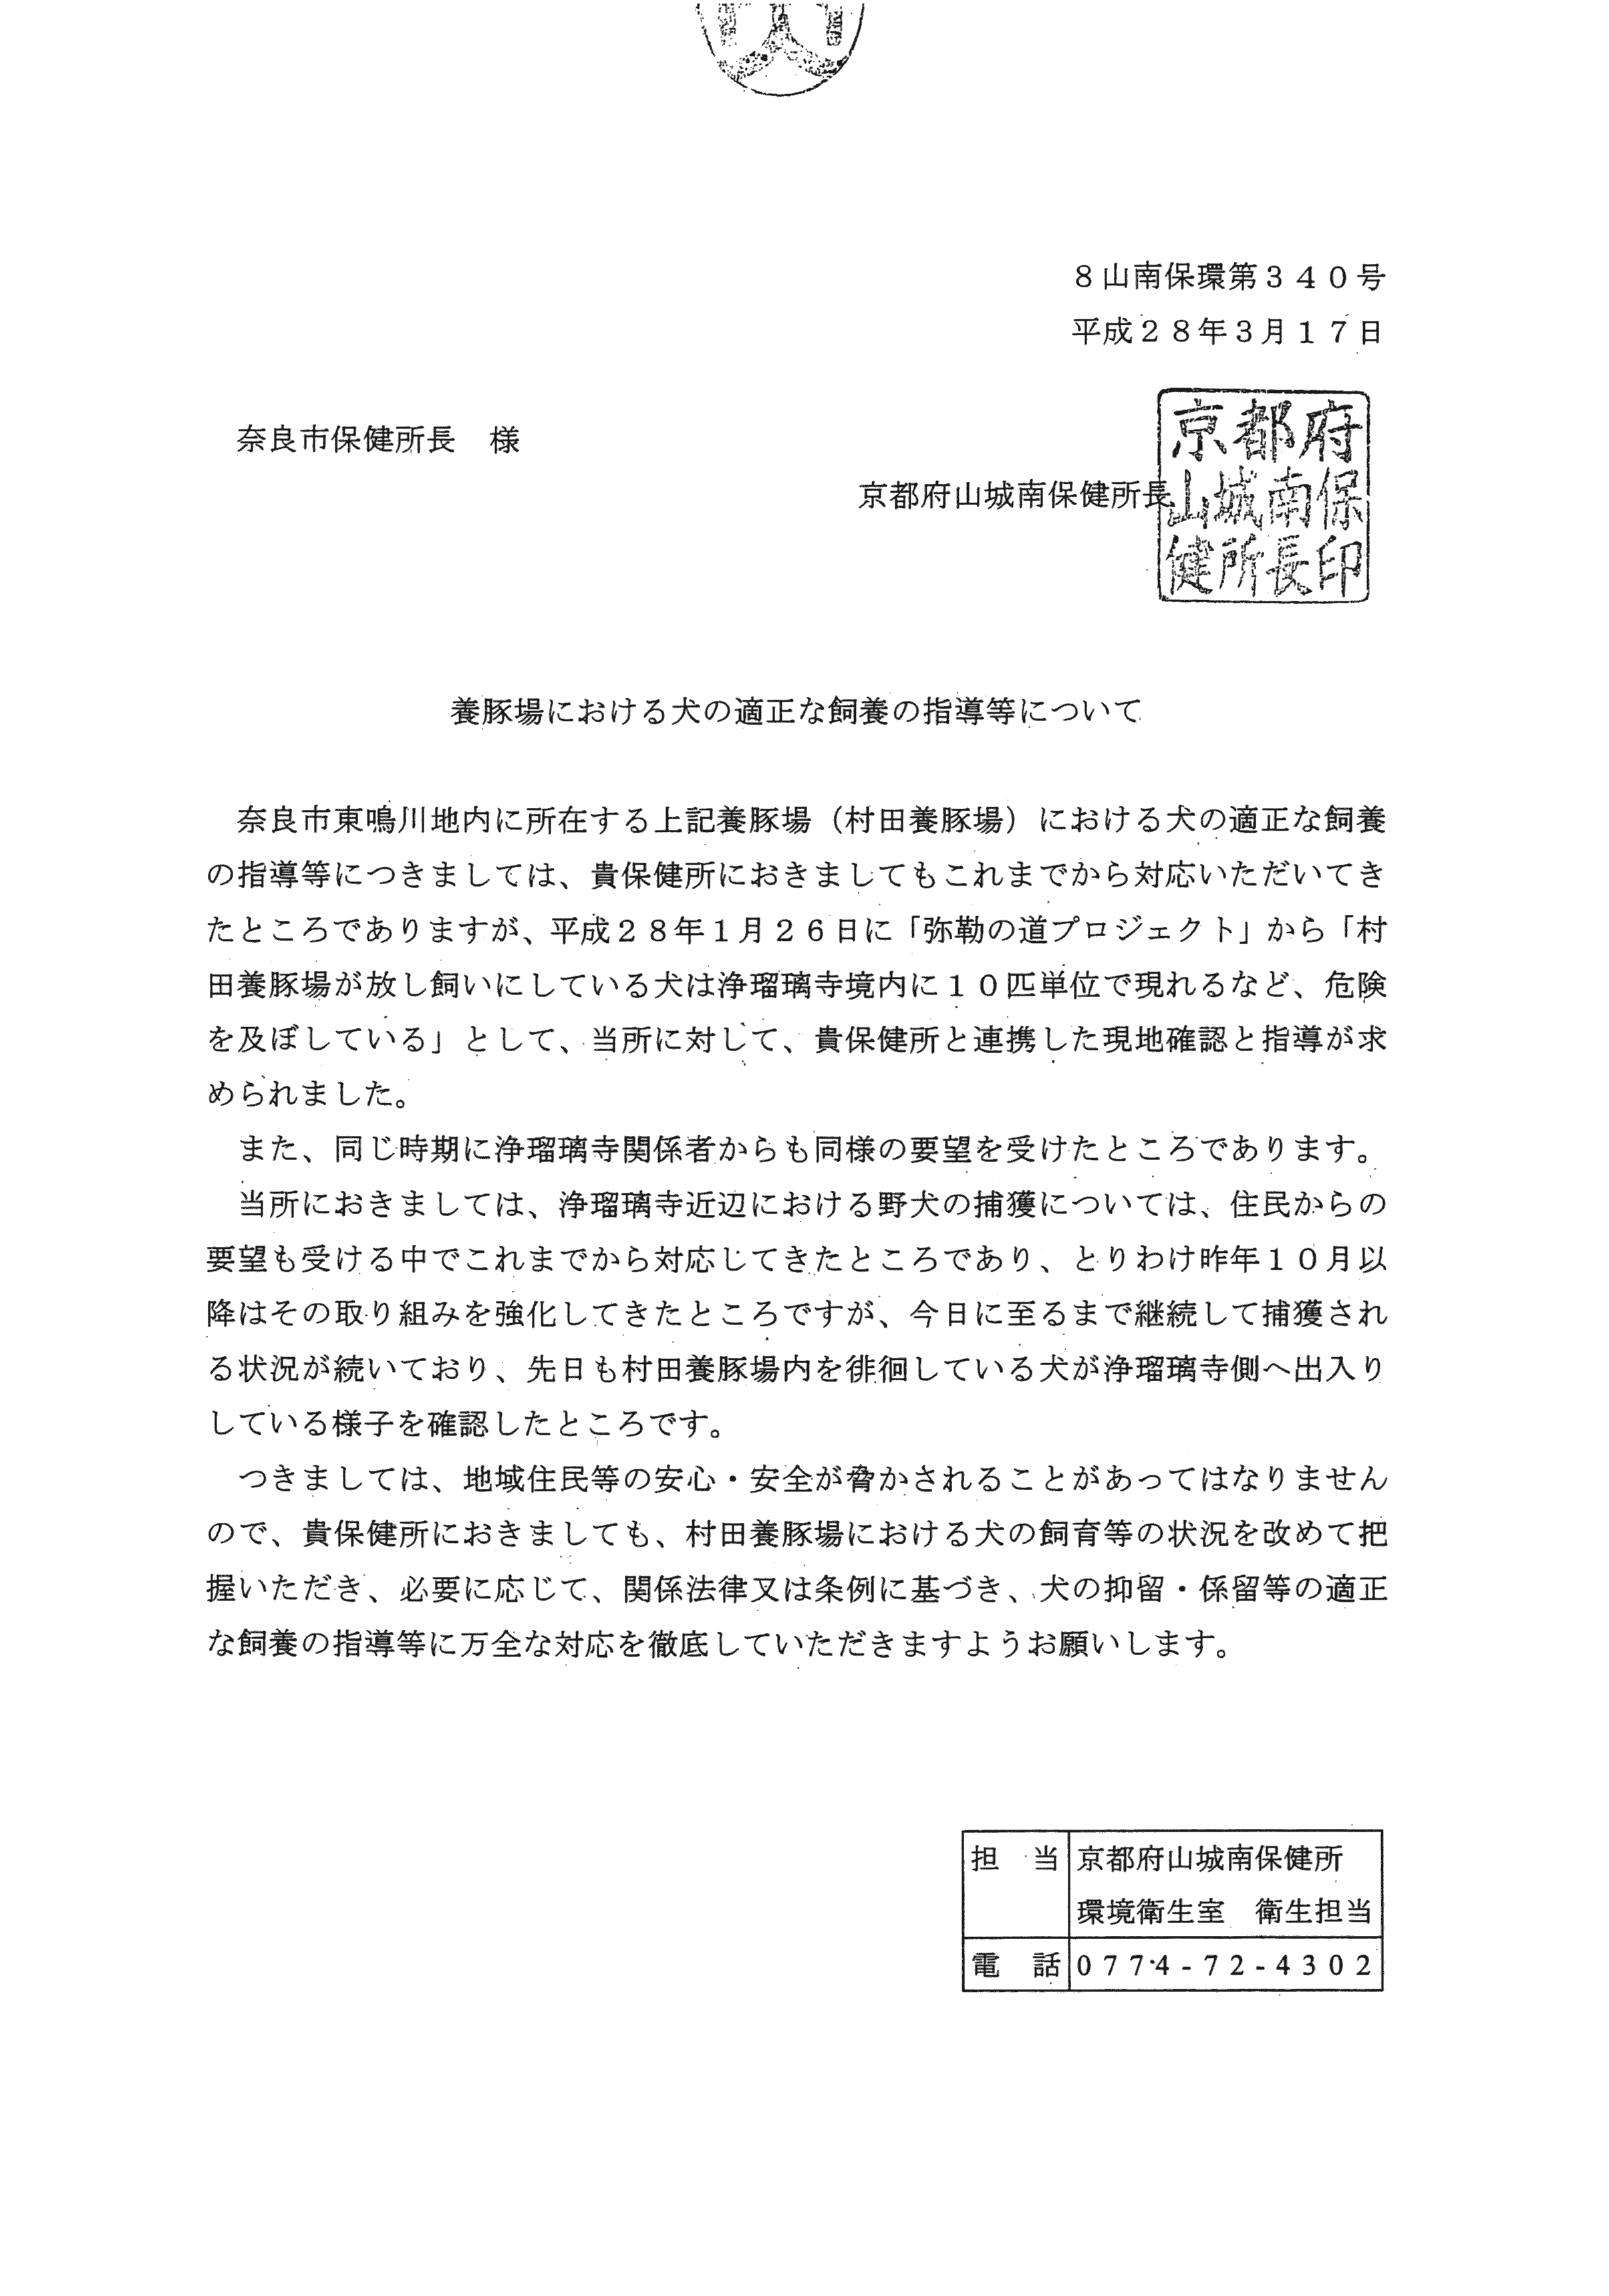 平成28年3月17日-奈良市保健所に対する要望書の手交について-02-要望書